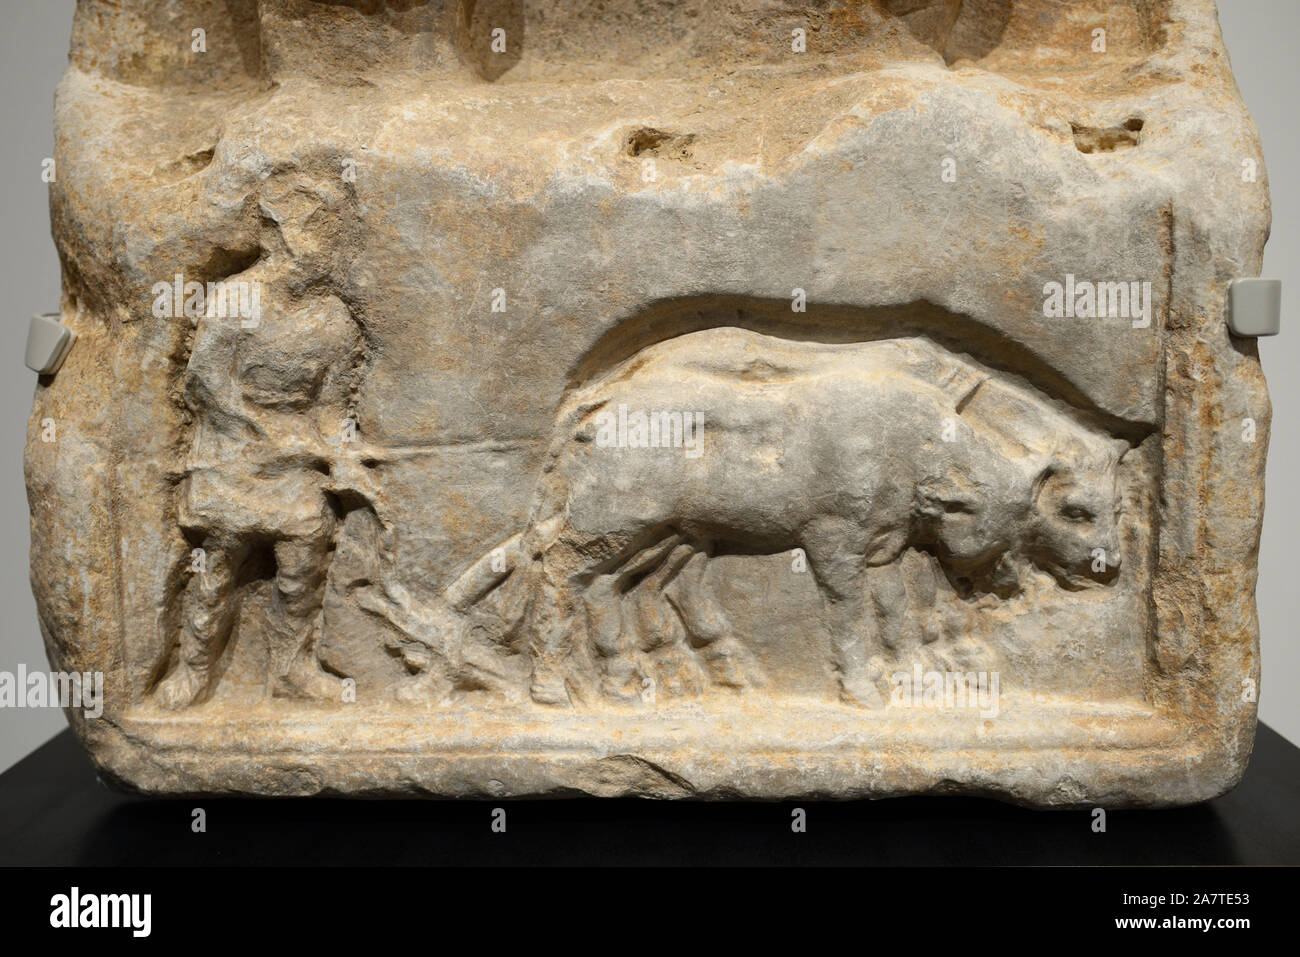 Geschnitzten Marmor Bas-Relief von Pflügen, Pflügen oder Landwirtschaft Szene auf römischen Stele aus c 1. AD, Römisches Museum Nimes. Stockfoto